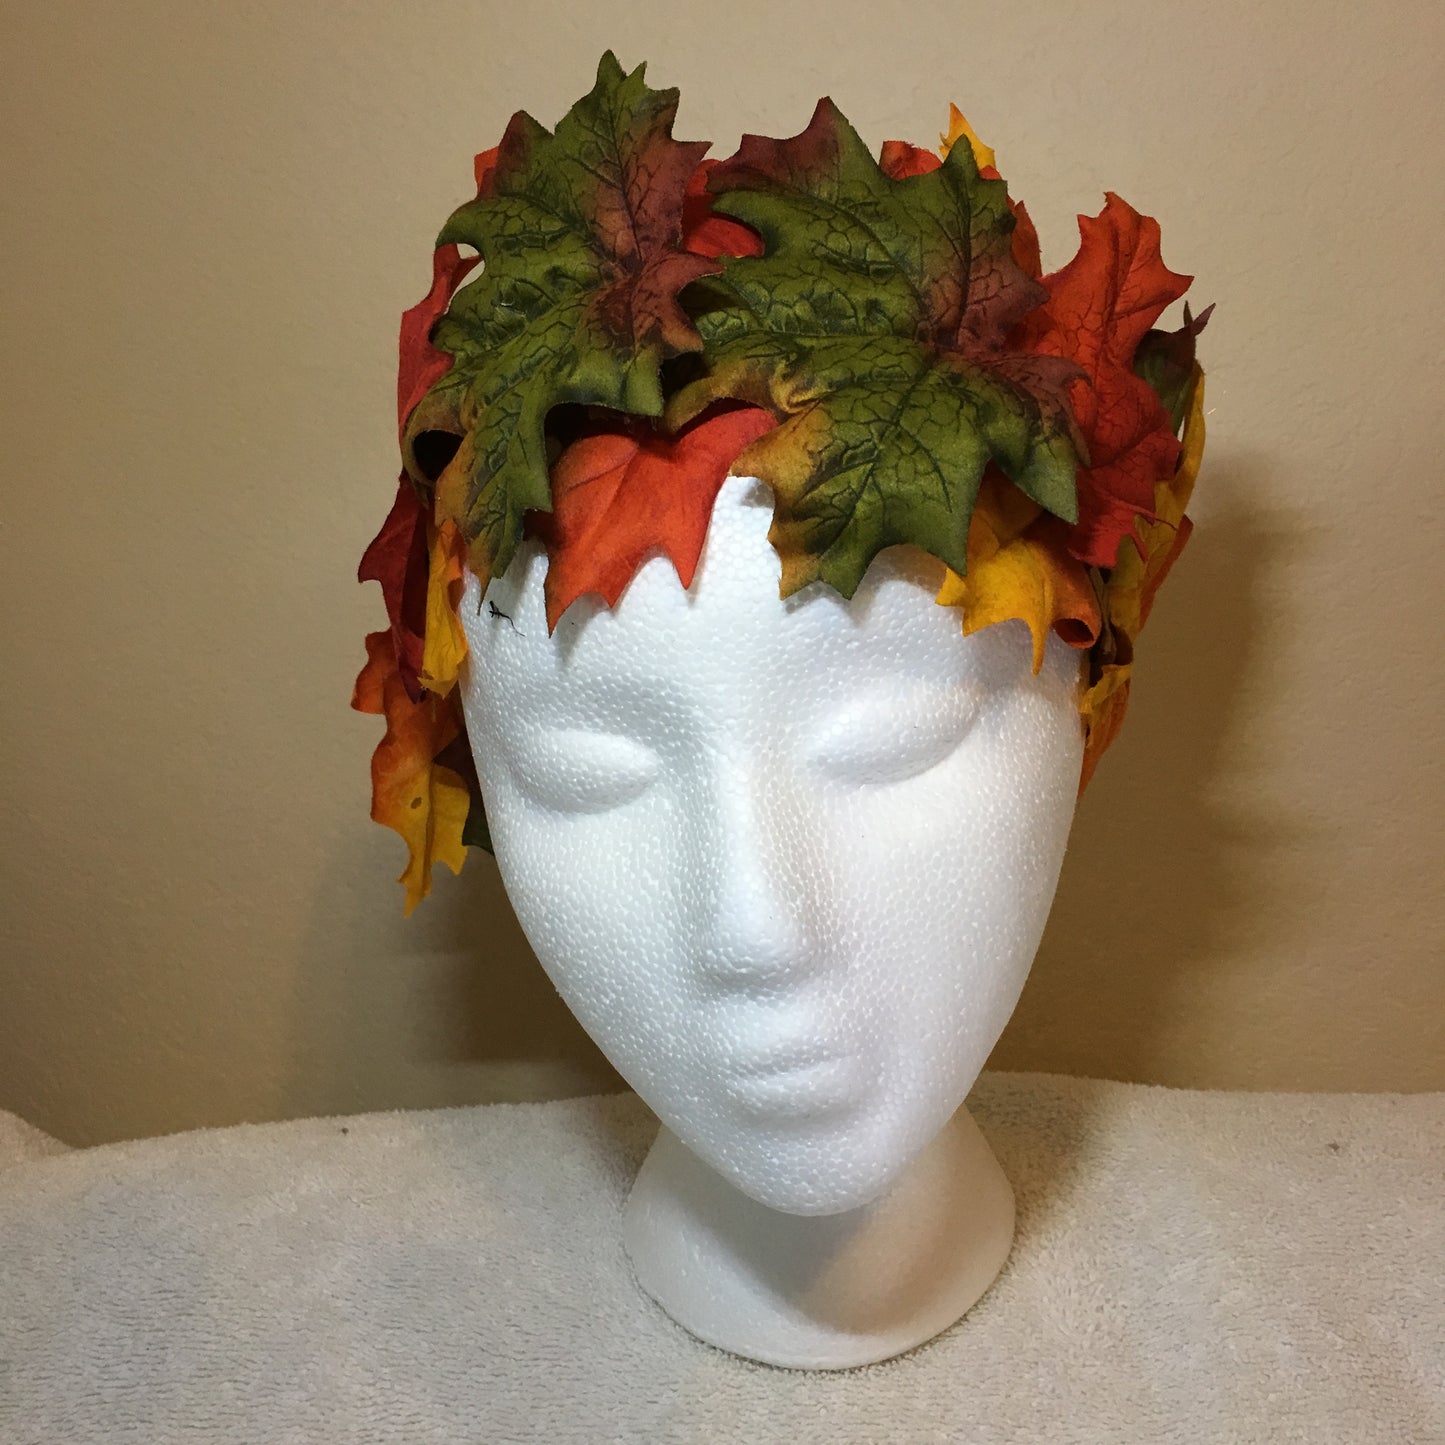 All-Leaf Wreath - Green, red & orange fall leaves